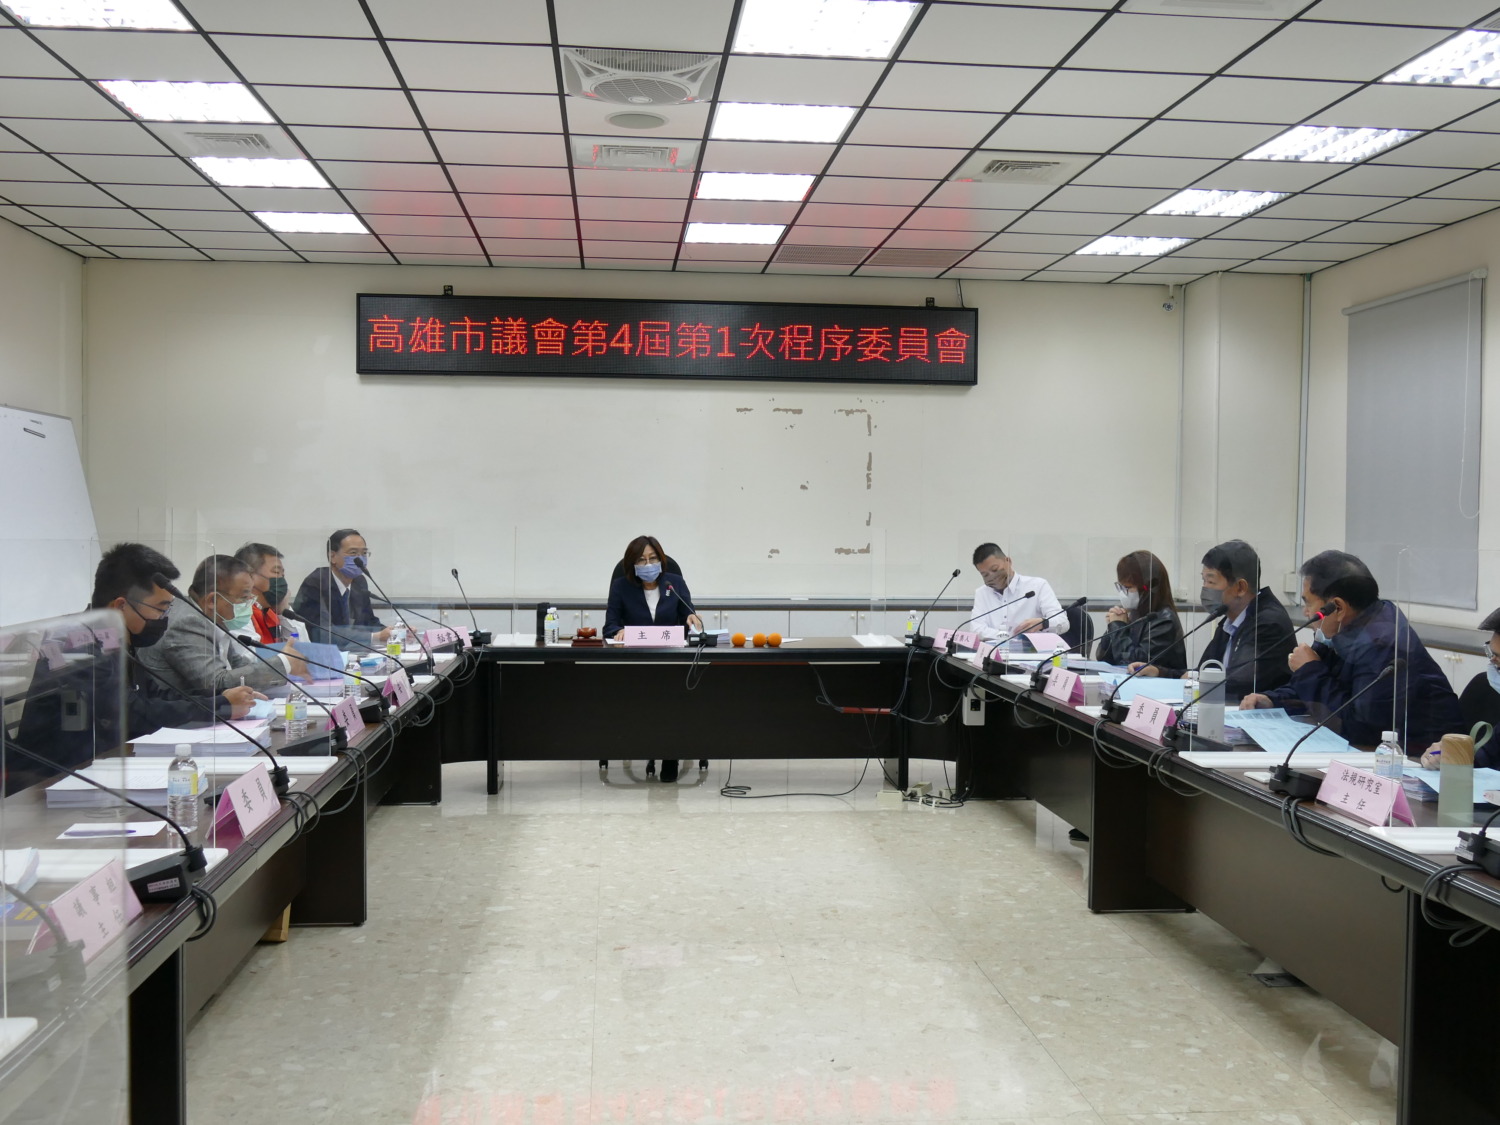 高雄市議會召開第4屆第1次程序委員會議